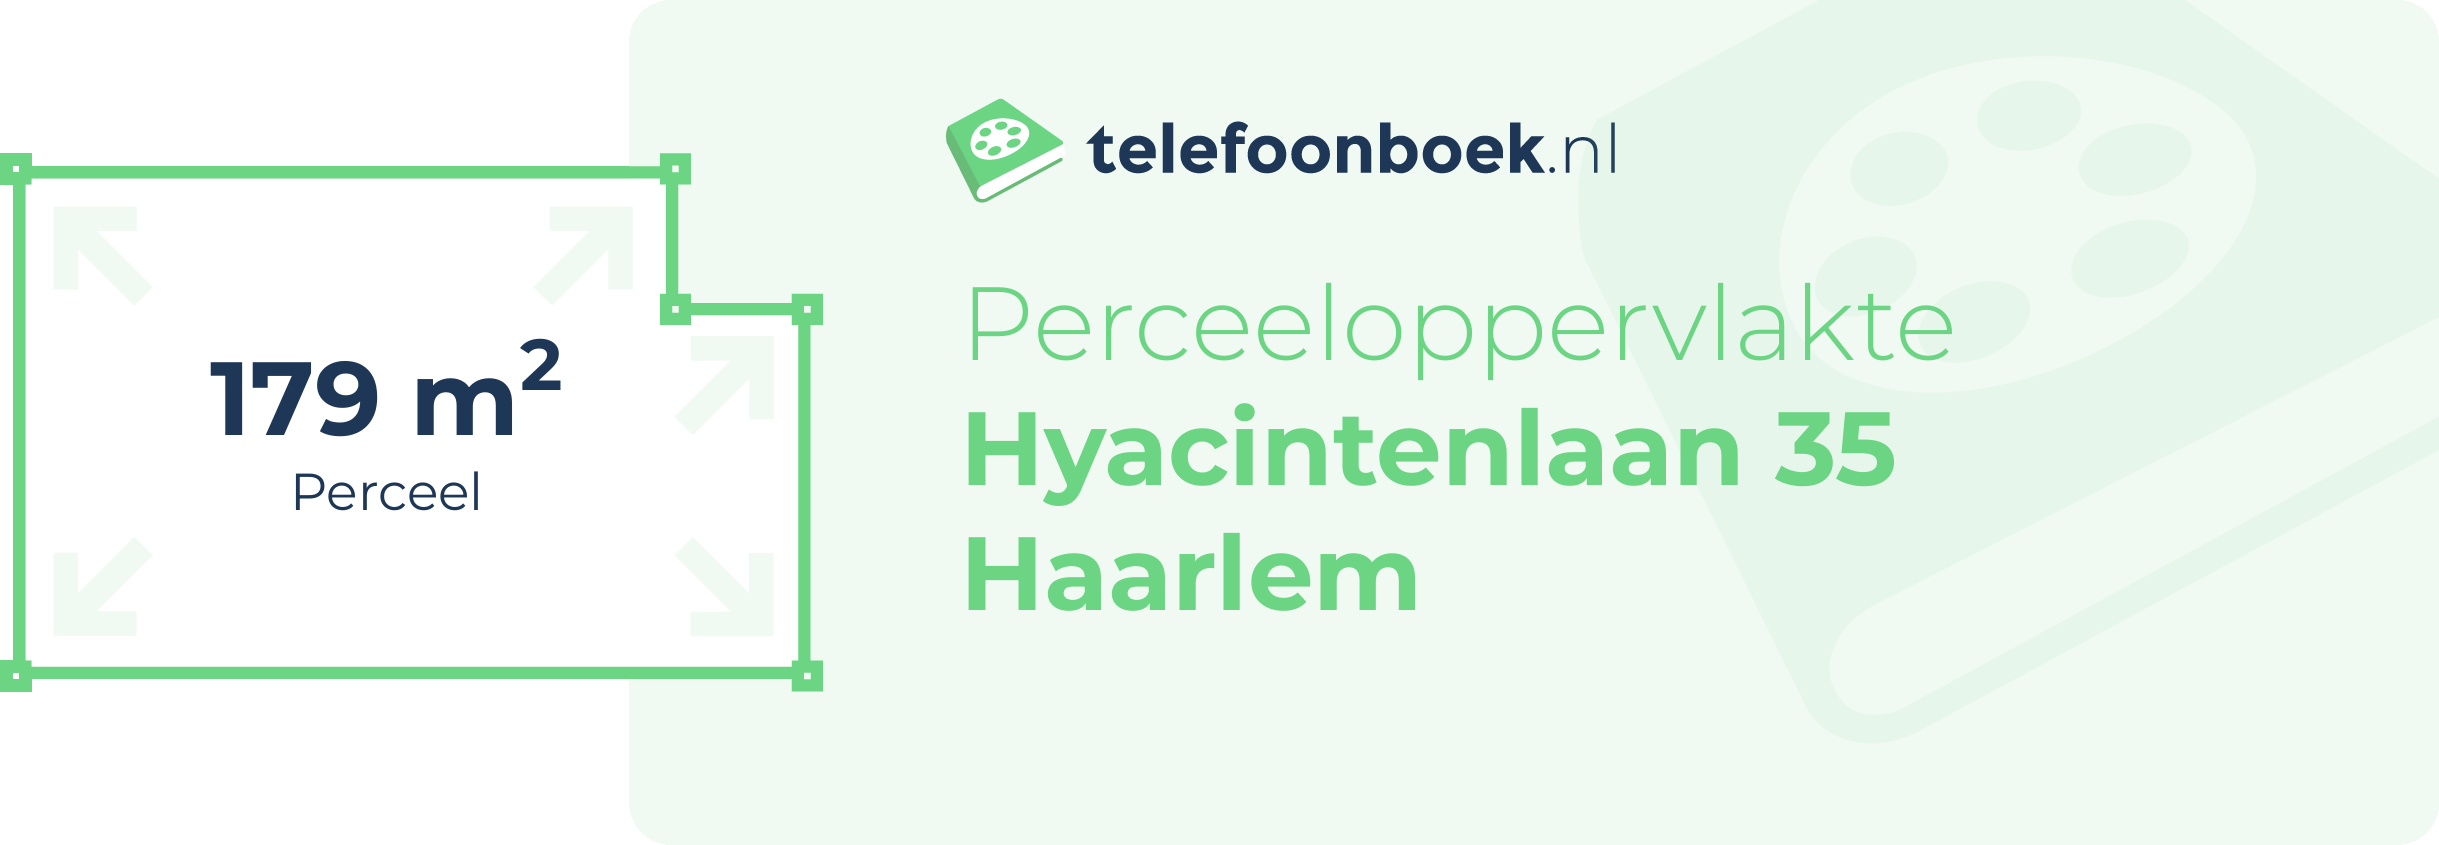 Perceeloppervlakte Hyacintenlaan 35 Haarlem